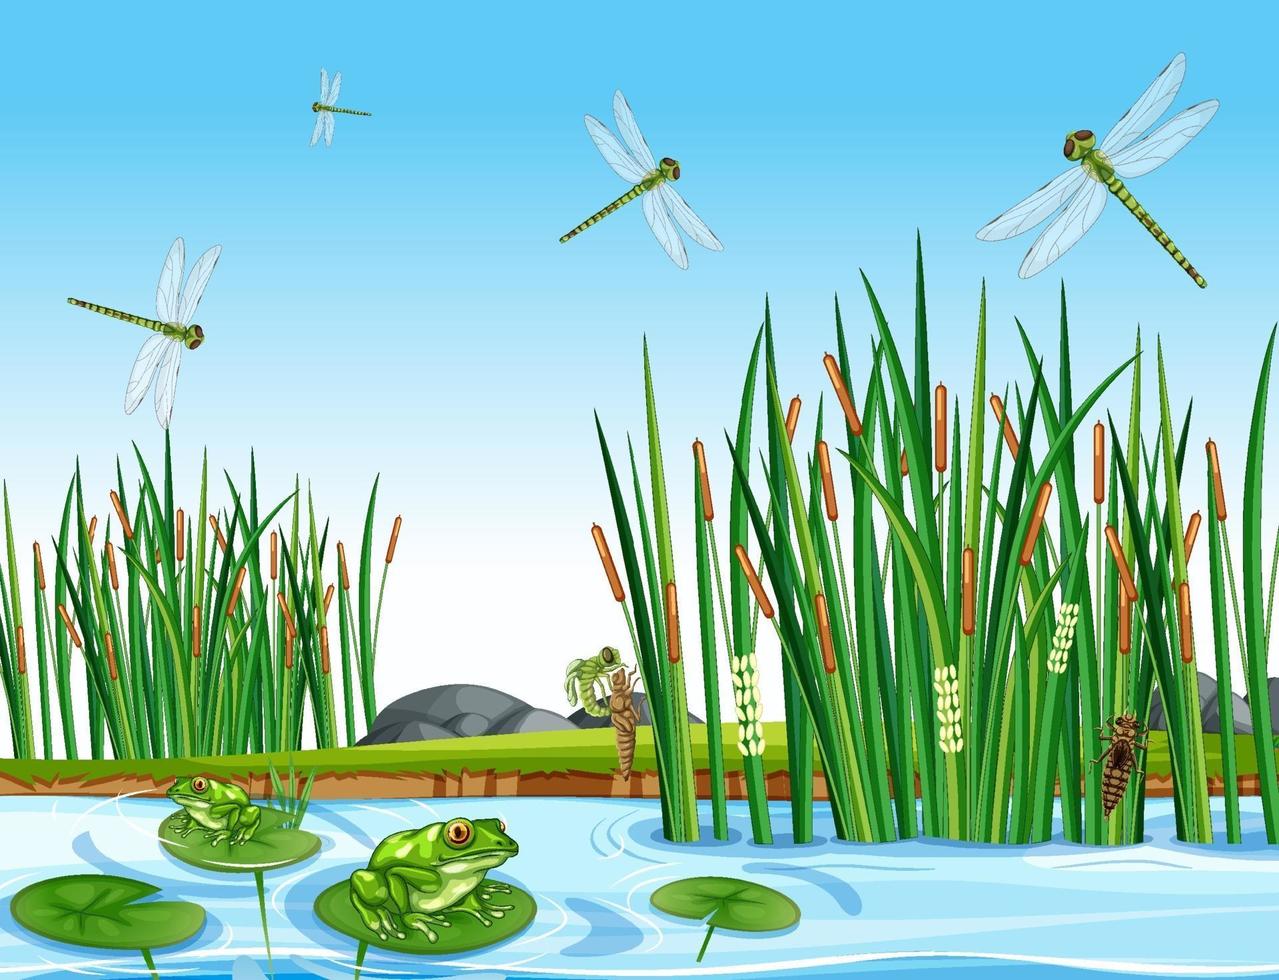 muchas ranas verdes y libélulas en la escena del estanque vector